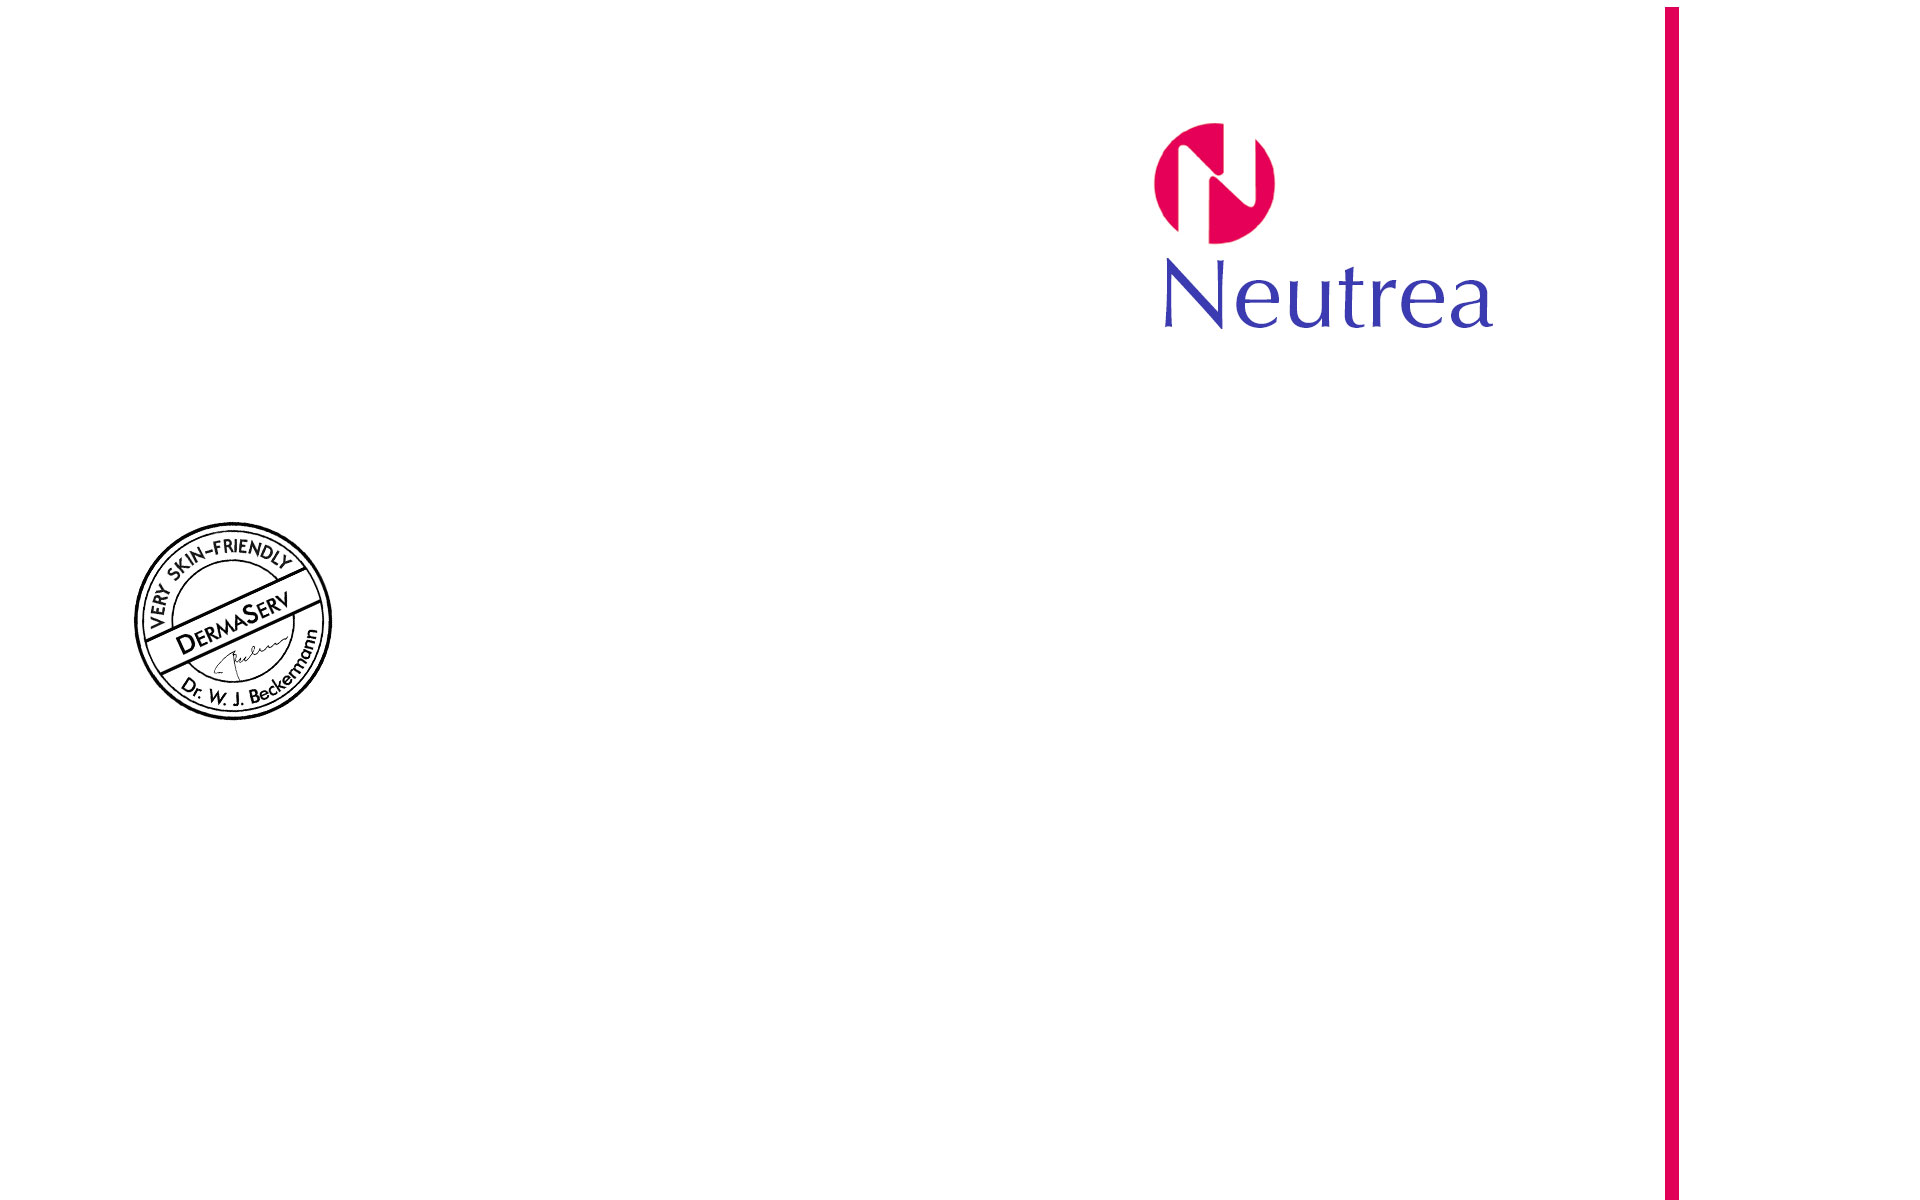 Neutrea